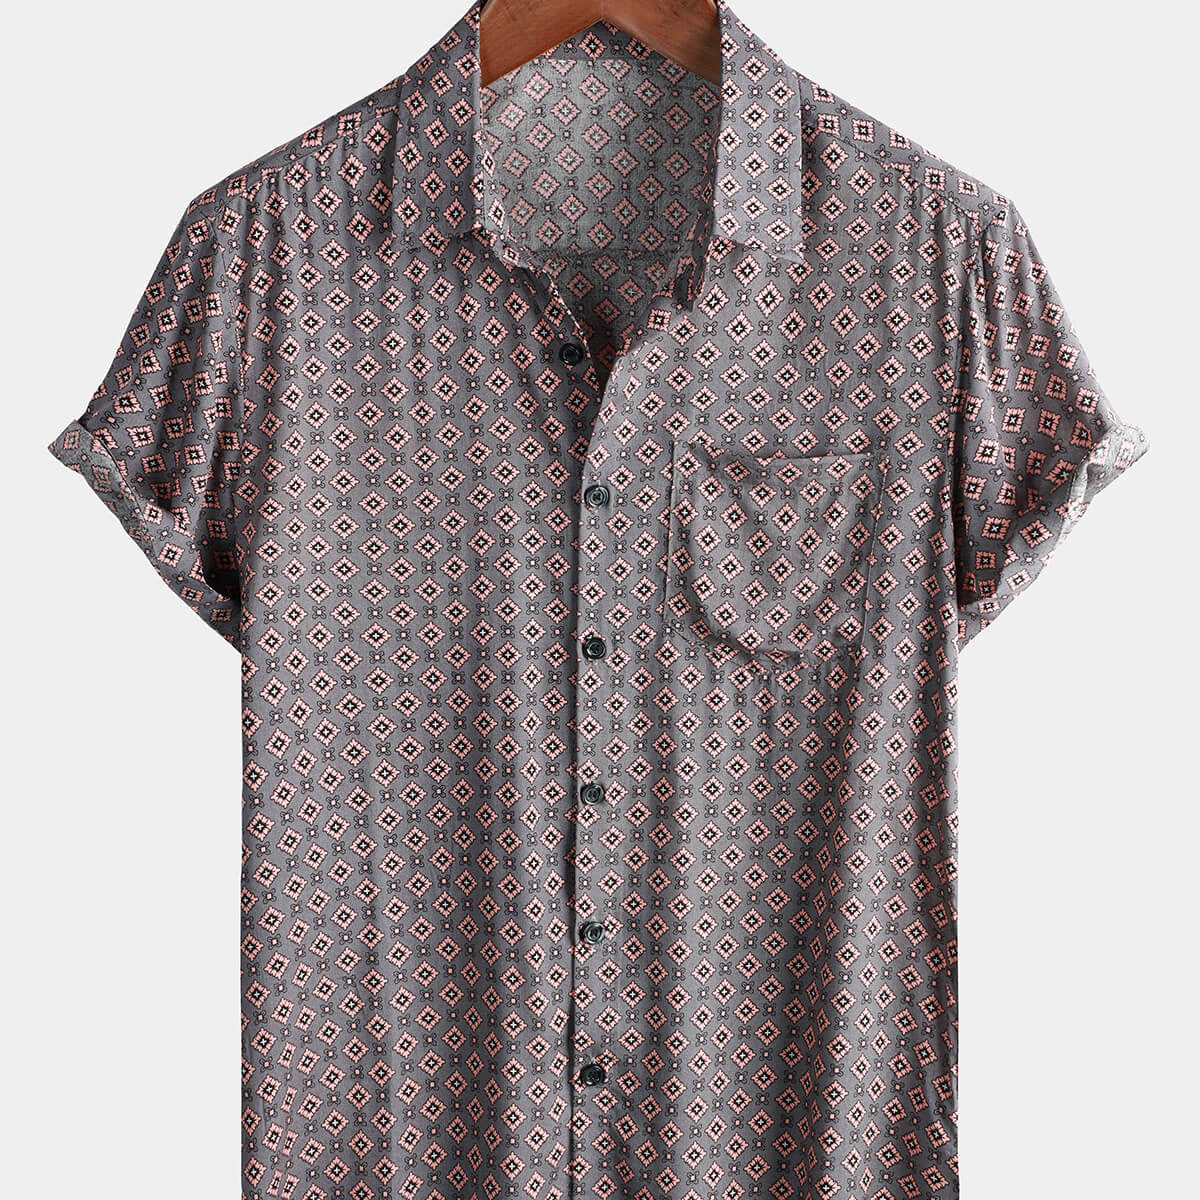 Men's Button Up Rayon Beach Short Sleeve Shirt